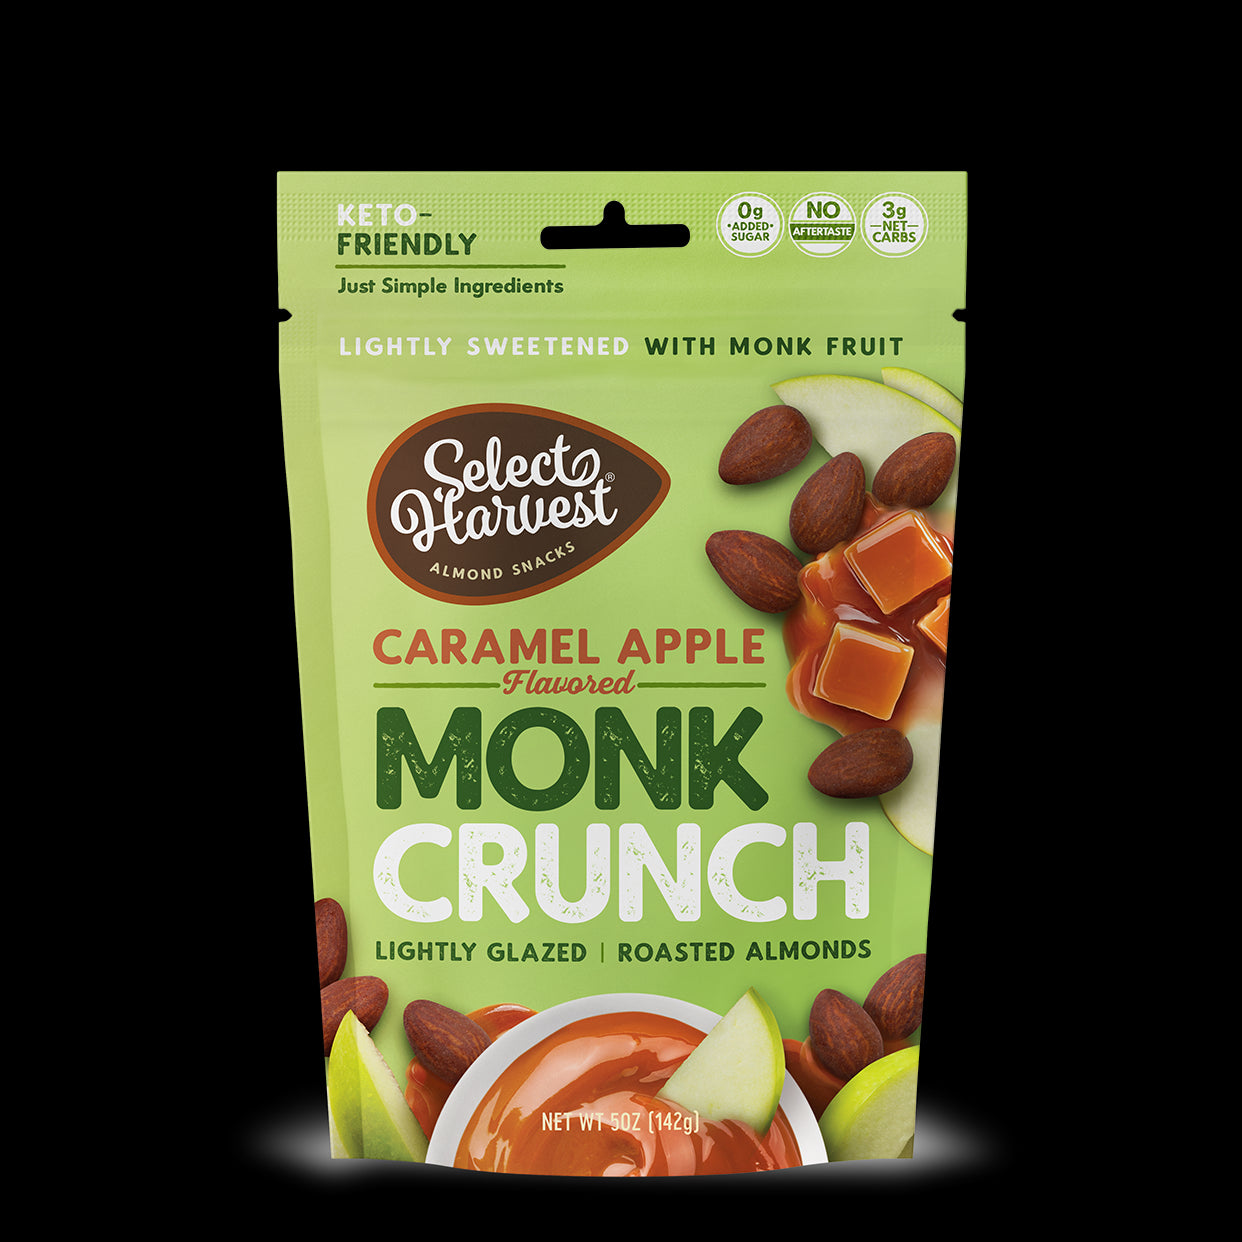 Caramel Apple Monk Crunch Almonds